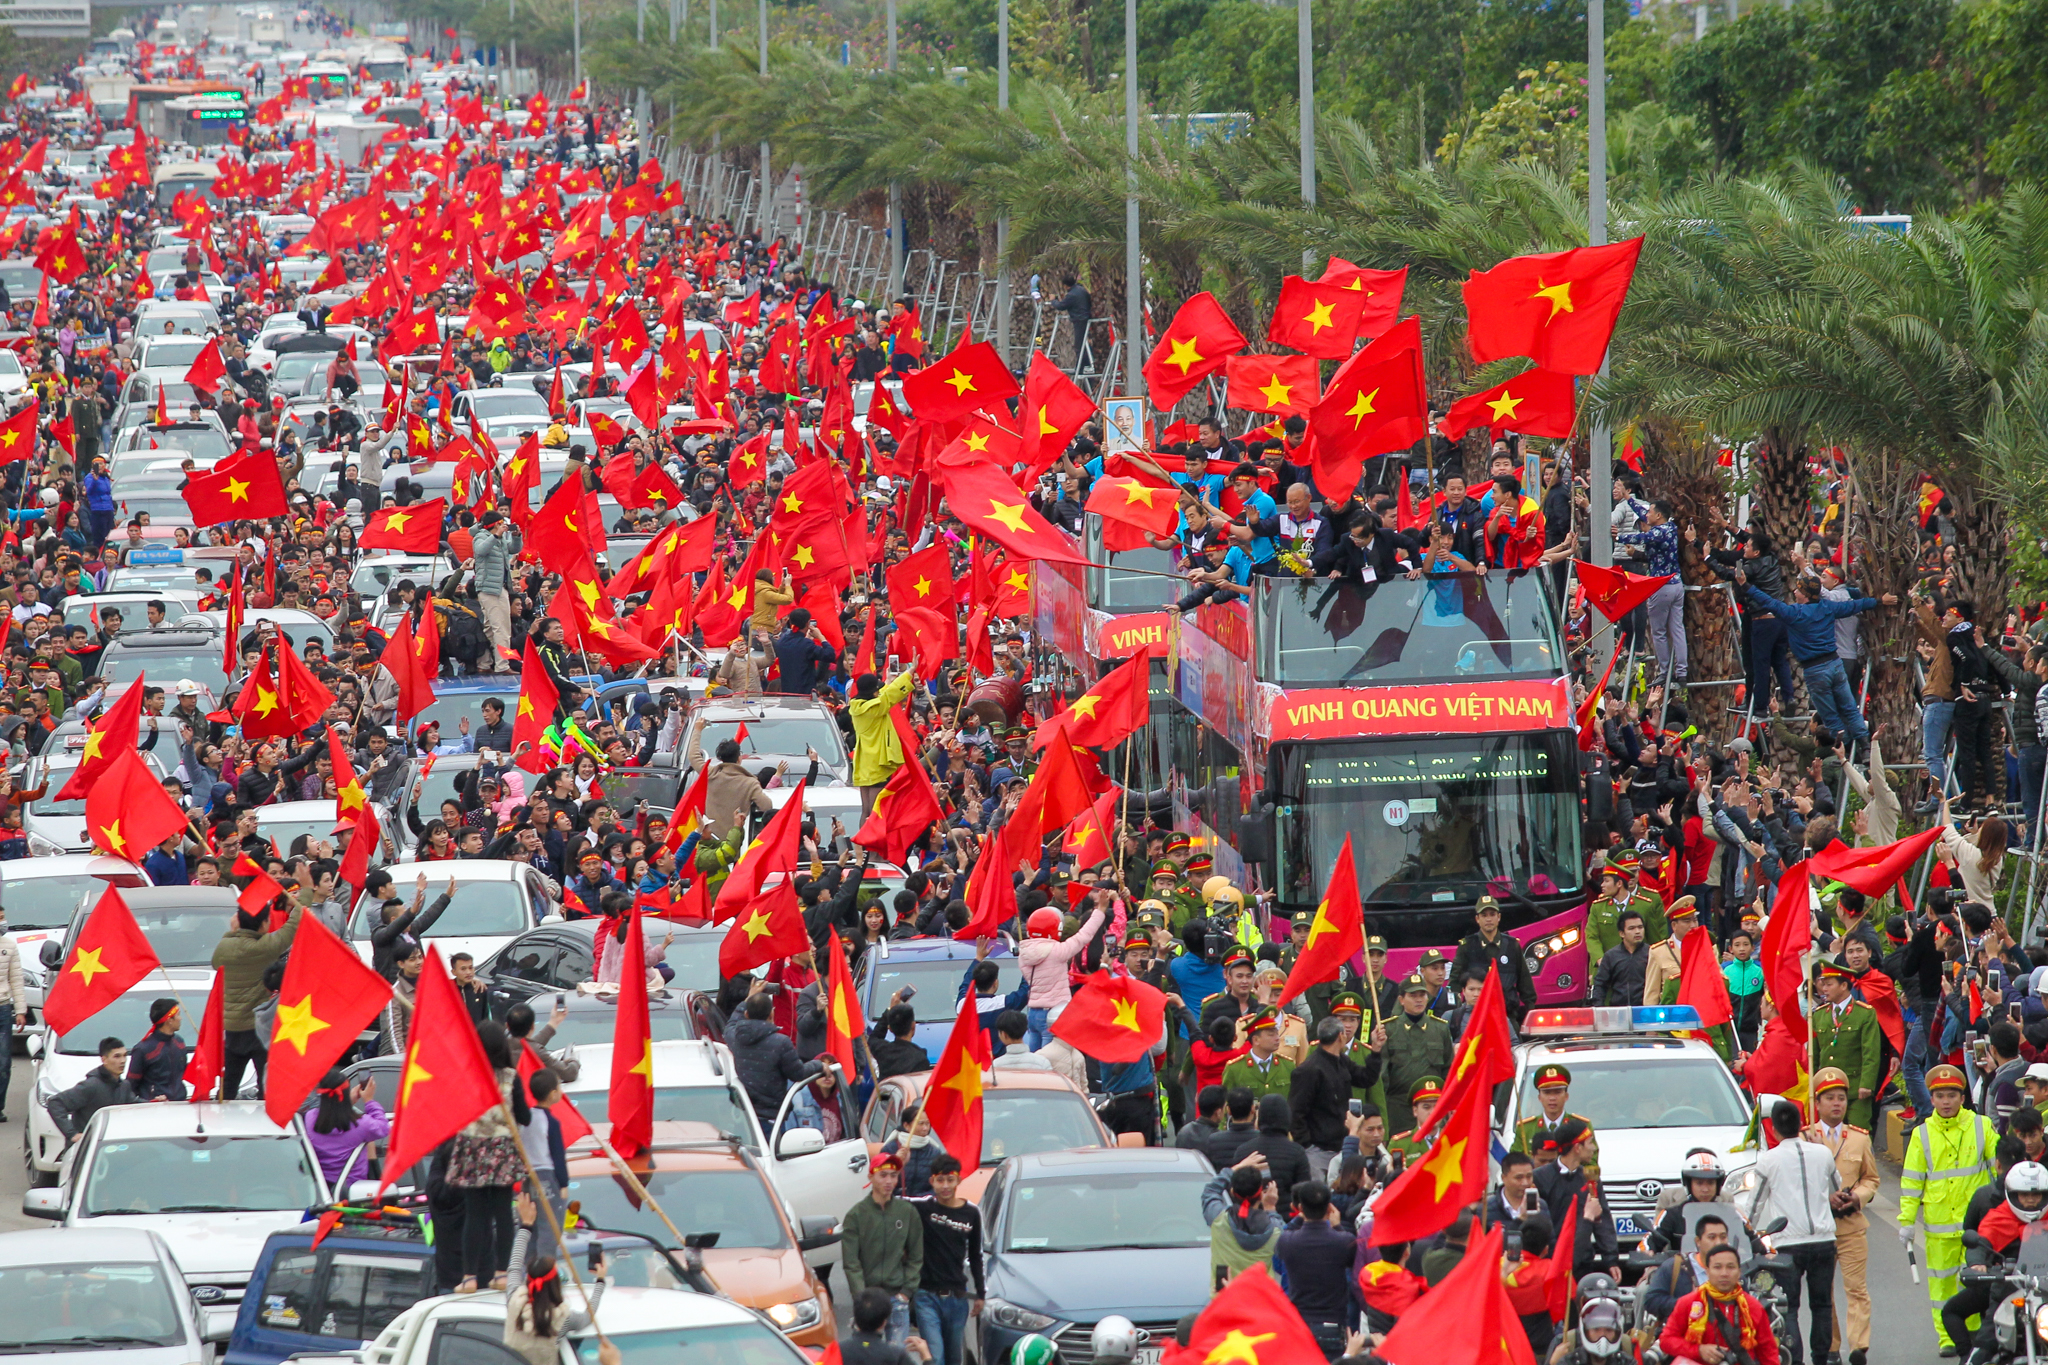 Khoảnh khắc hàng vạn lá cờ đỏ sao vàng tung bay trong gió khiến nhiều người tự hào xúc động (Ảnh: Lê Minh Sơn/Vietnam+)